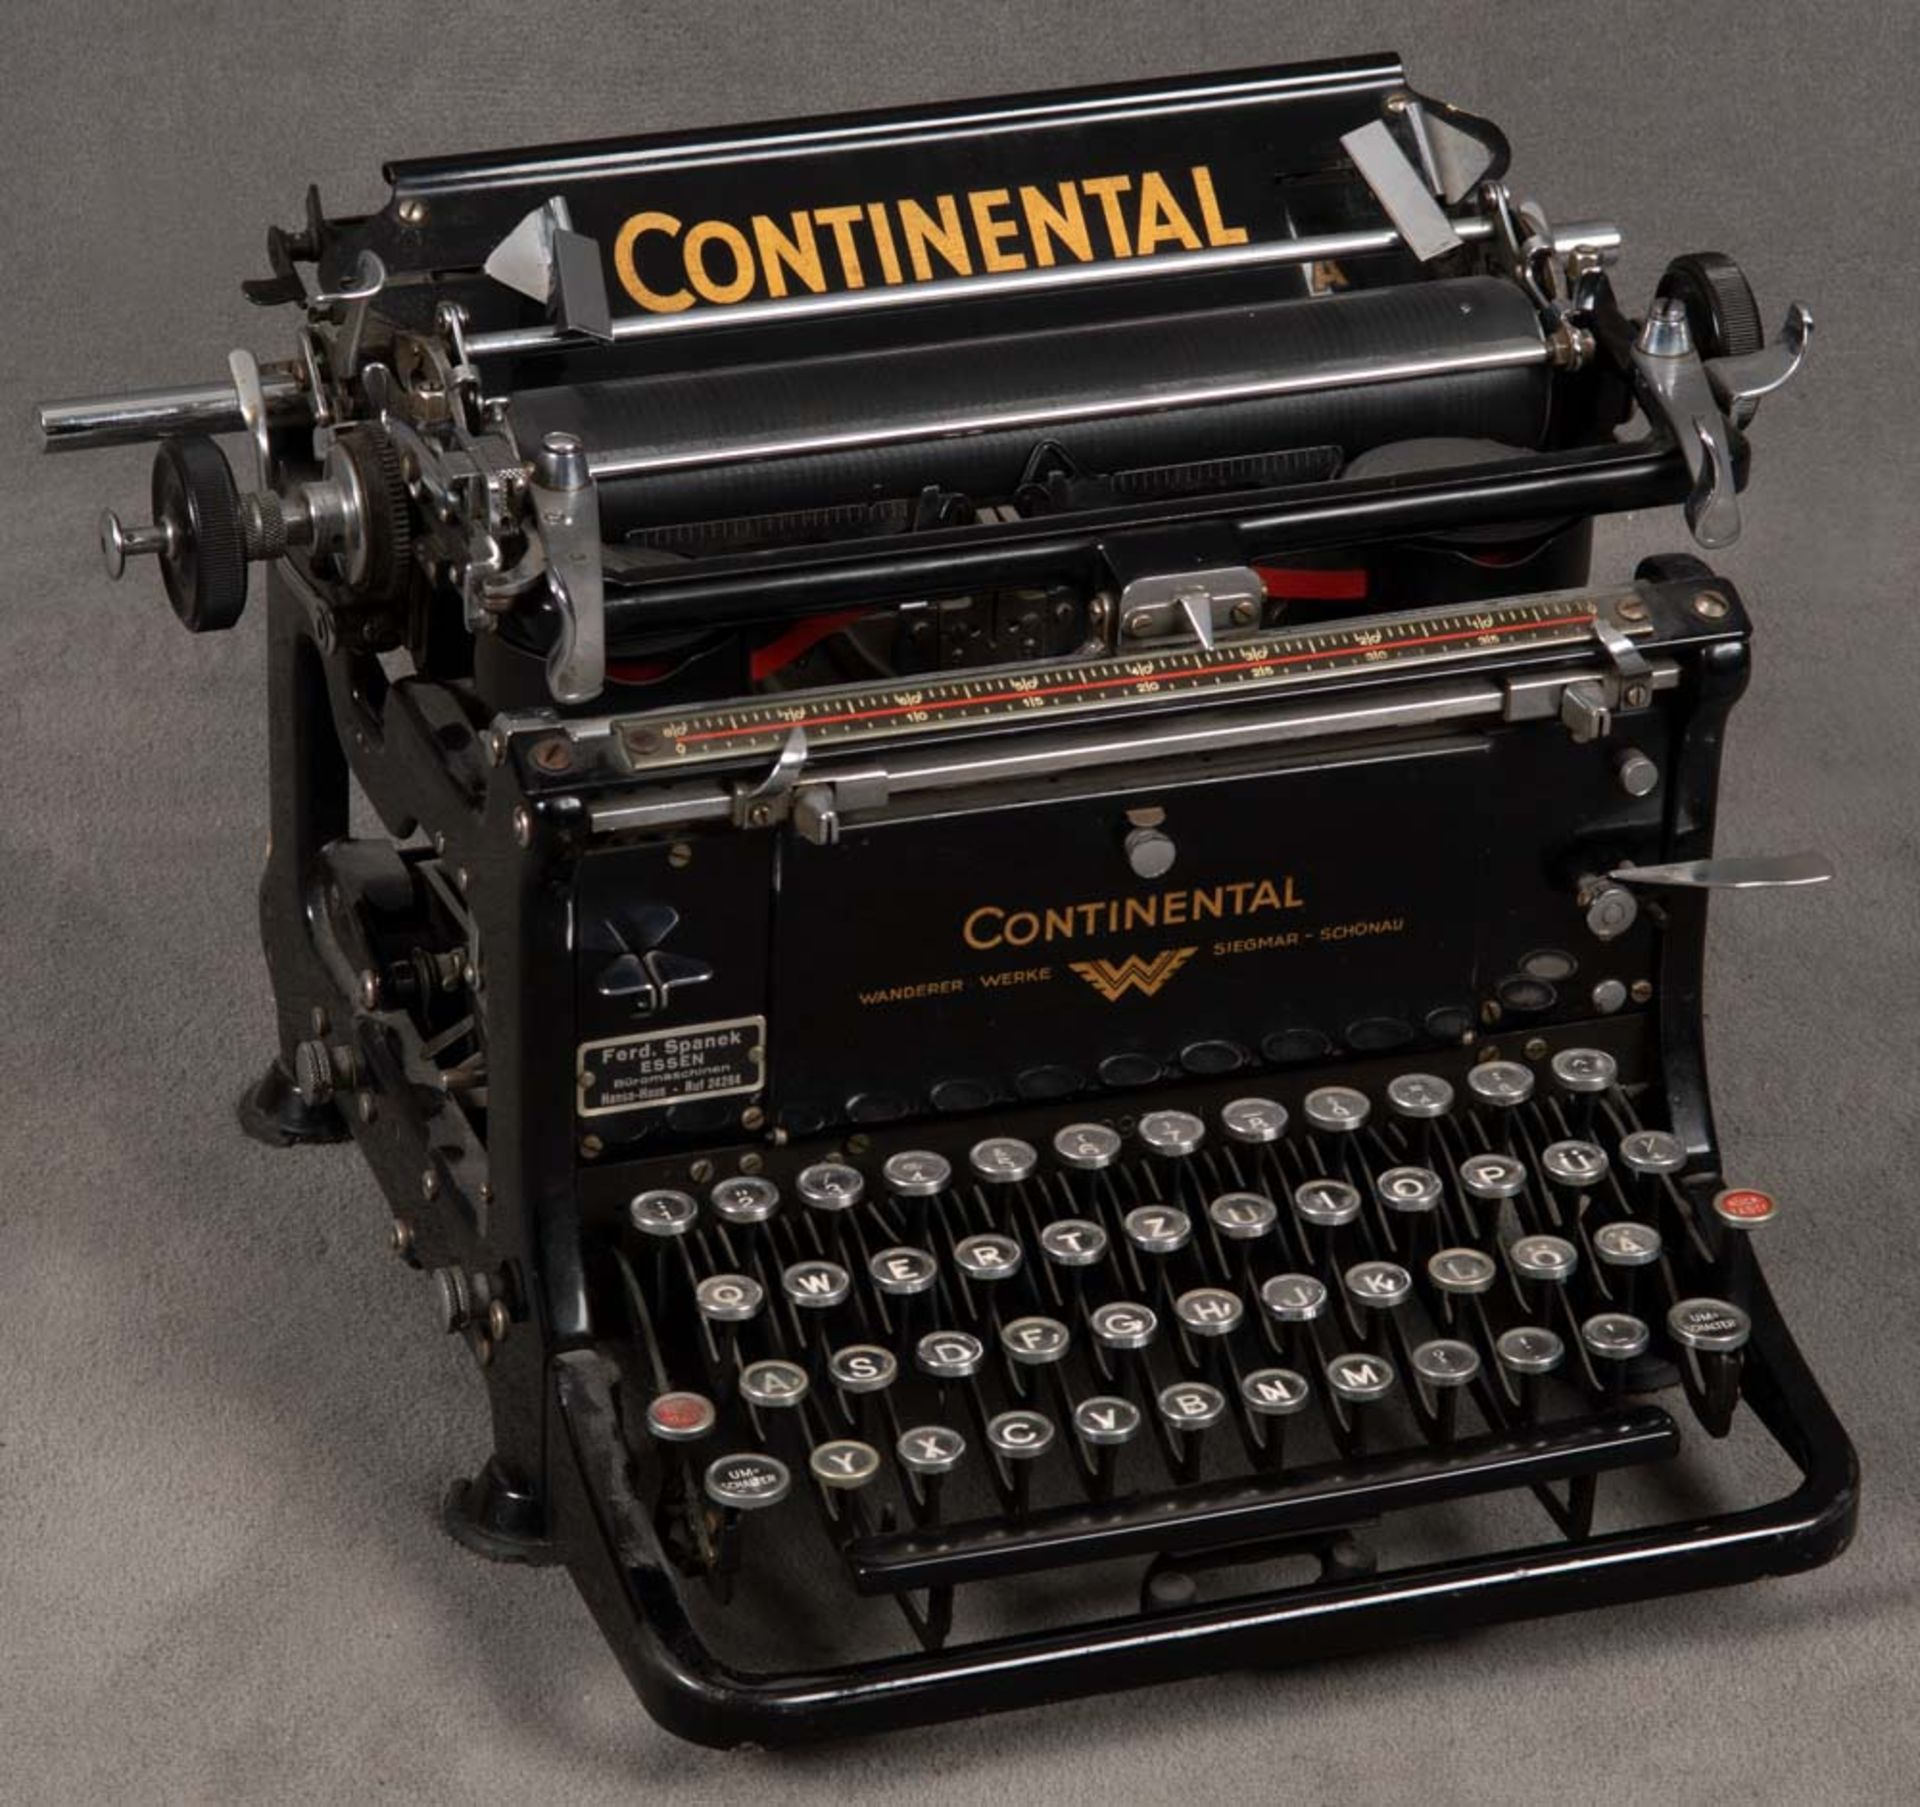 Schreibmaschine, Marke Continental. Siegmar-Schönau, Wanderer-Werke, H=24 cm, B=39 cm, T=35 cm